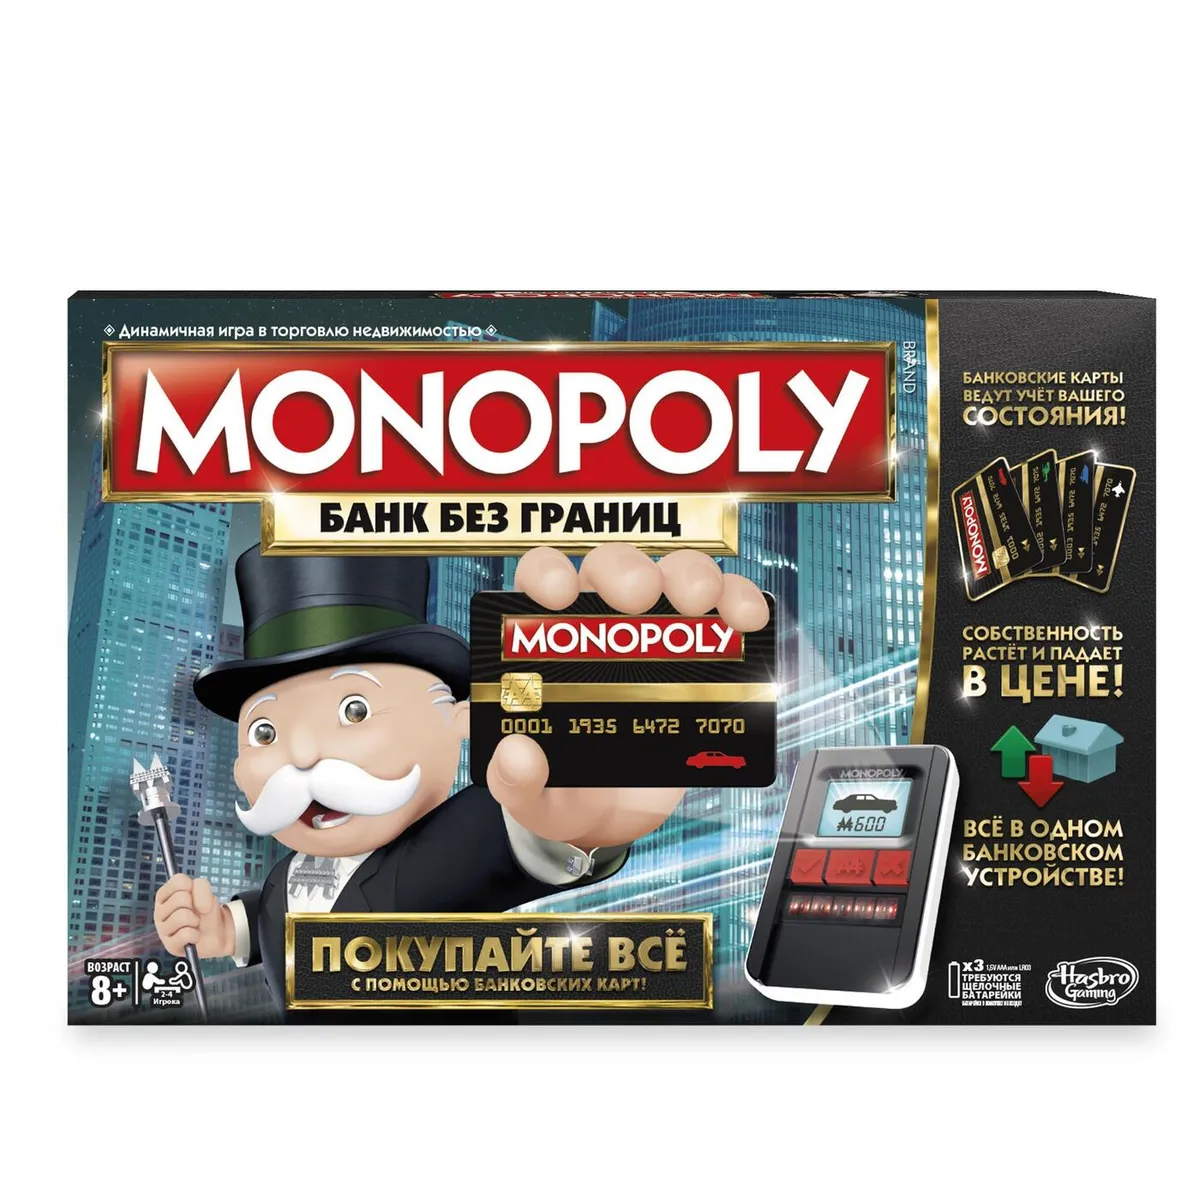 Монополия на английском языке. Оригинал | Monopoly USA. Hasbro (C1009 EN)